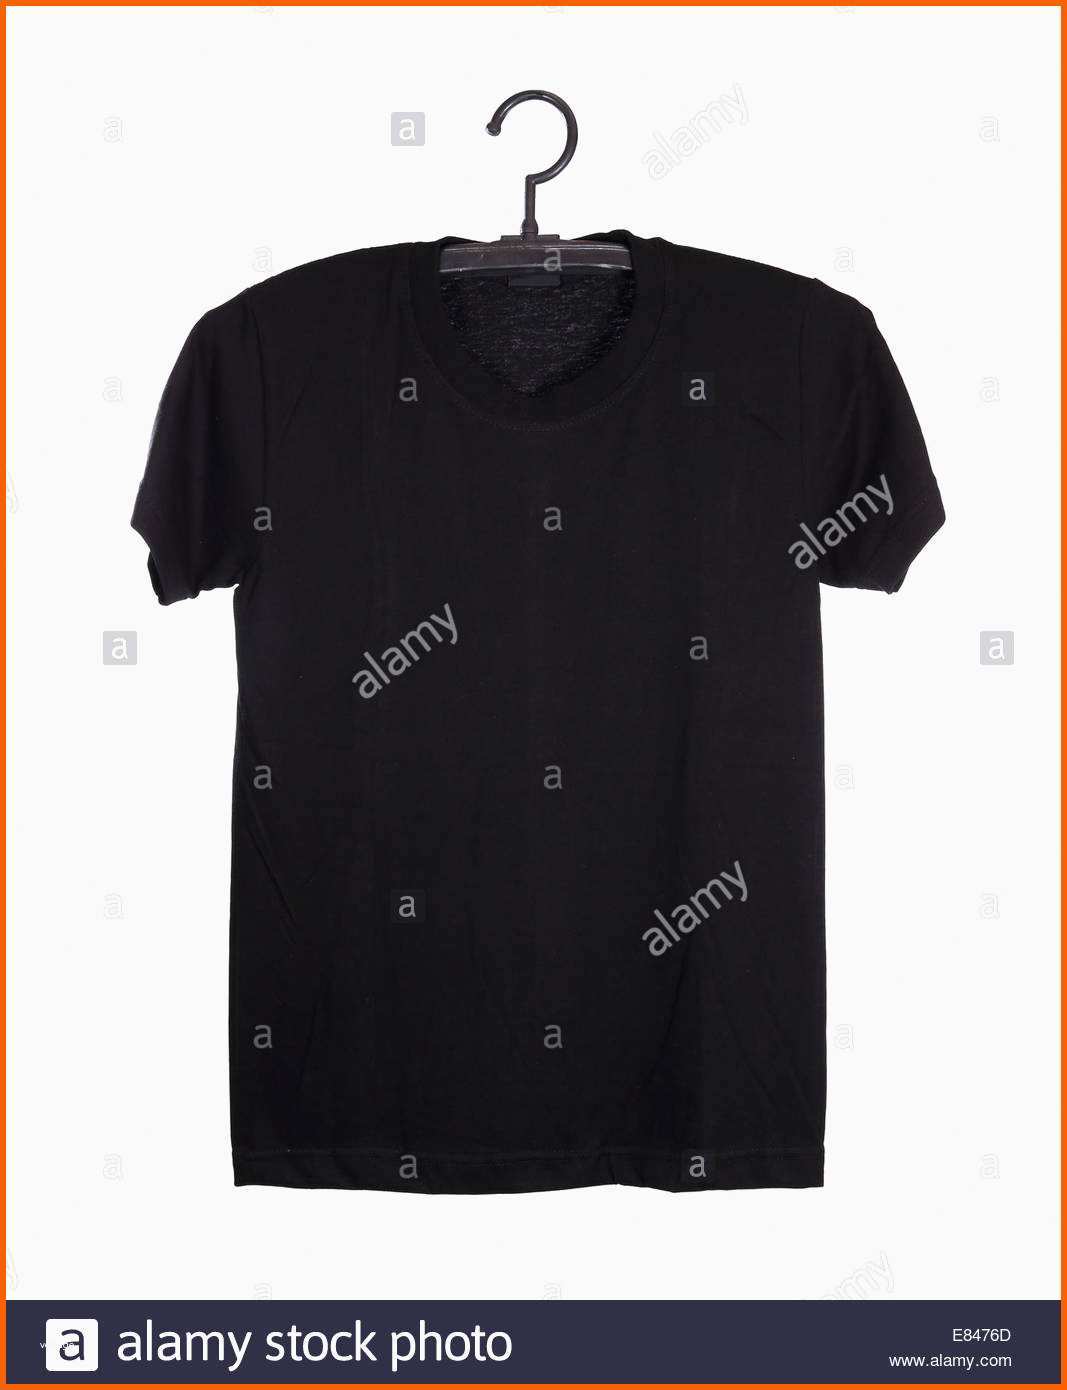 stockfoto schwarzes t shirt vorlage auf kleiderbugel vorderseite isoliert auf weissem hintergrund